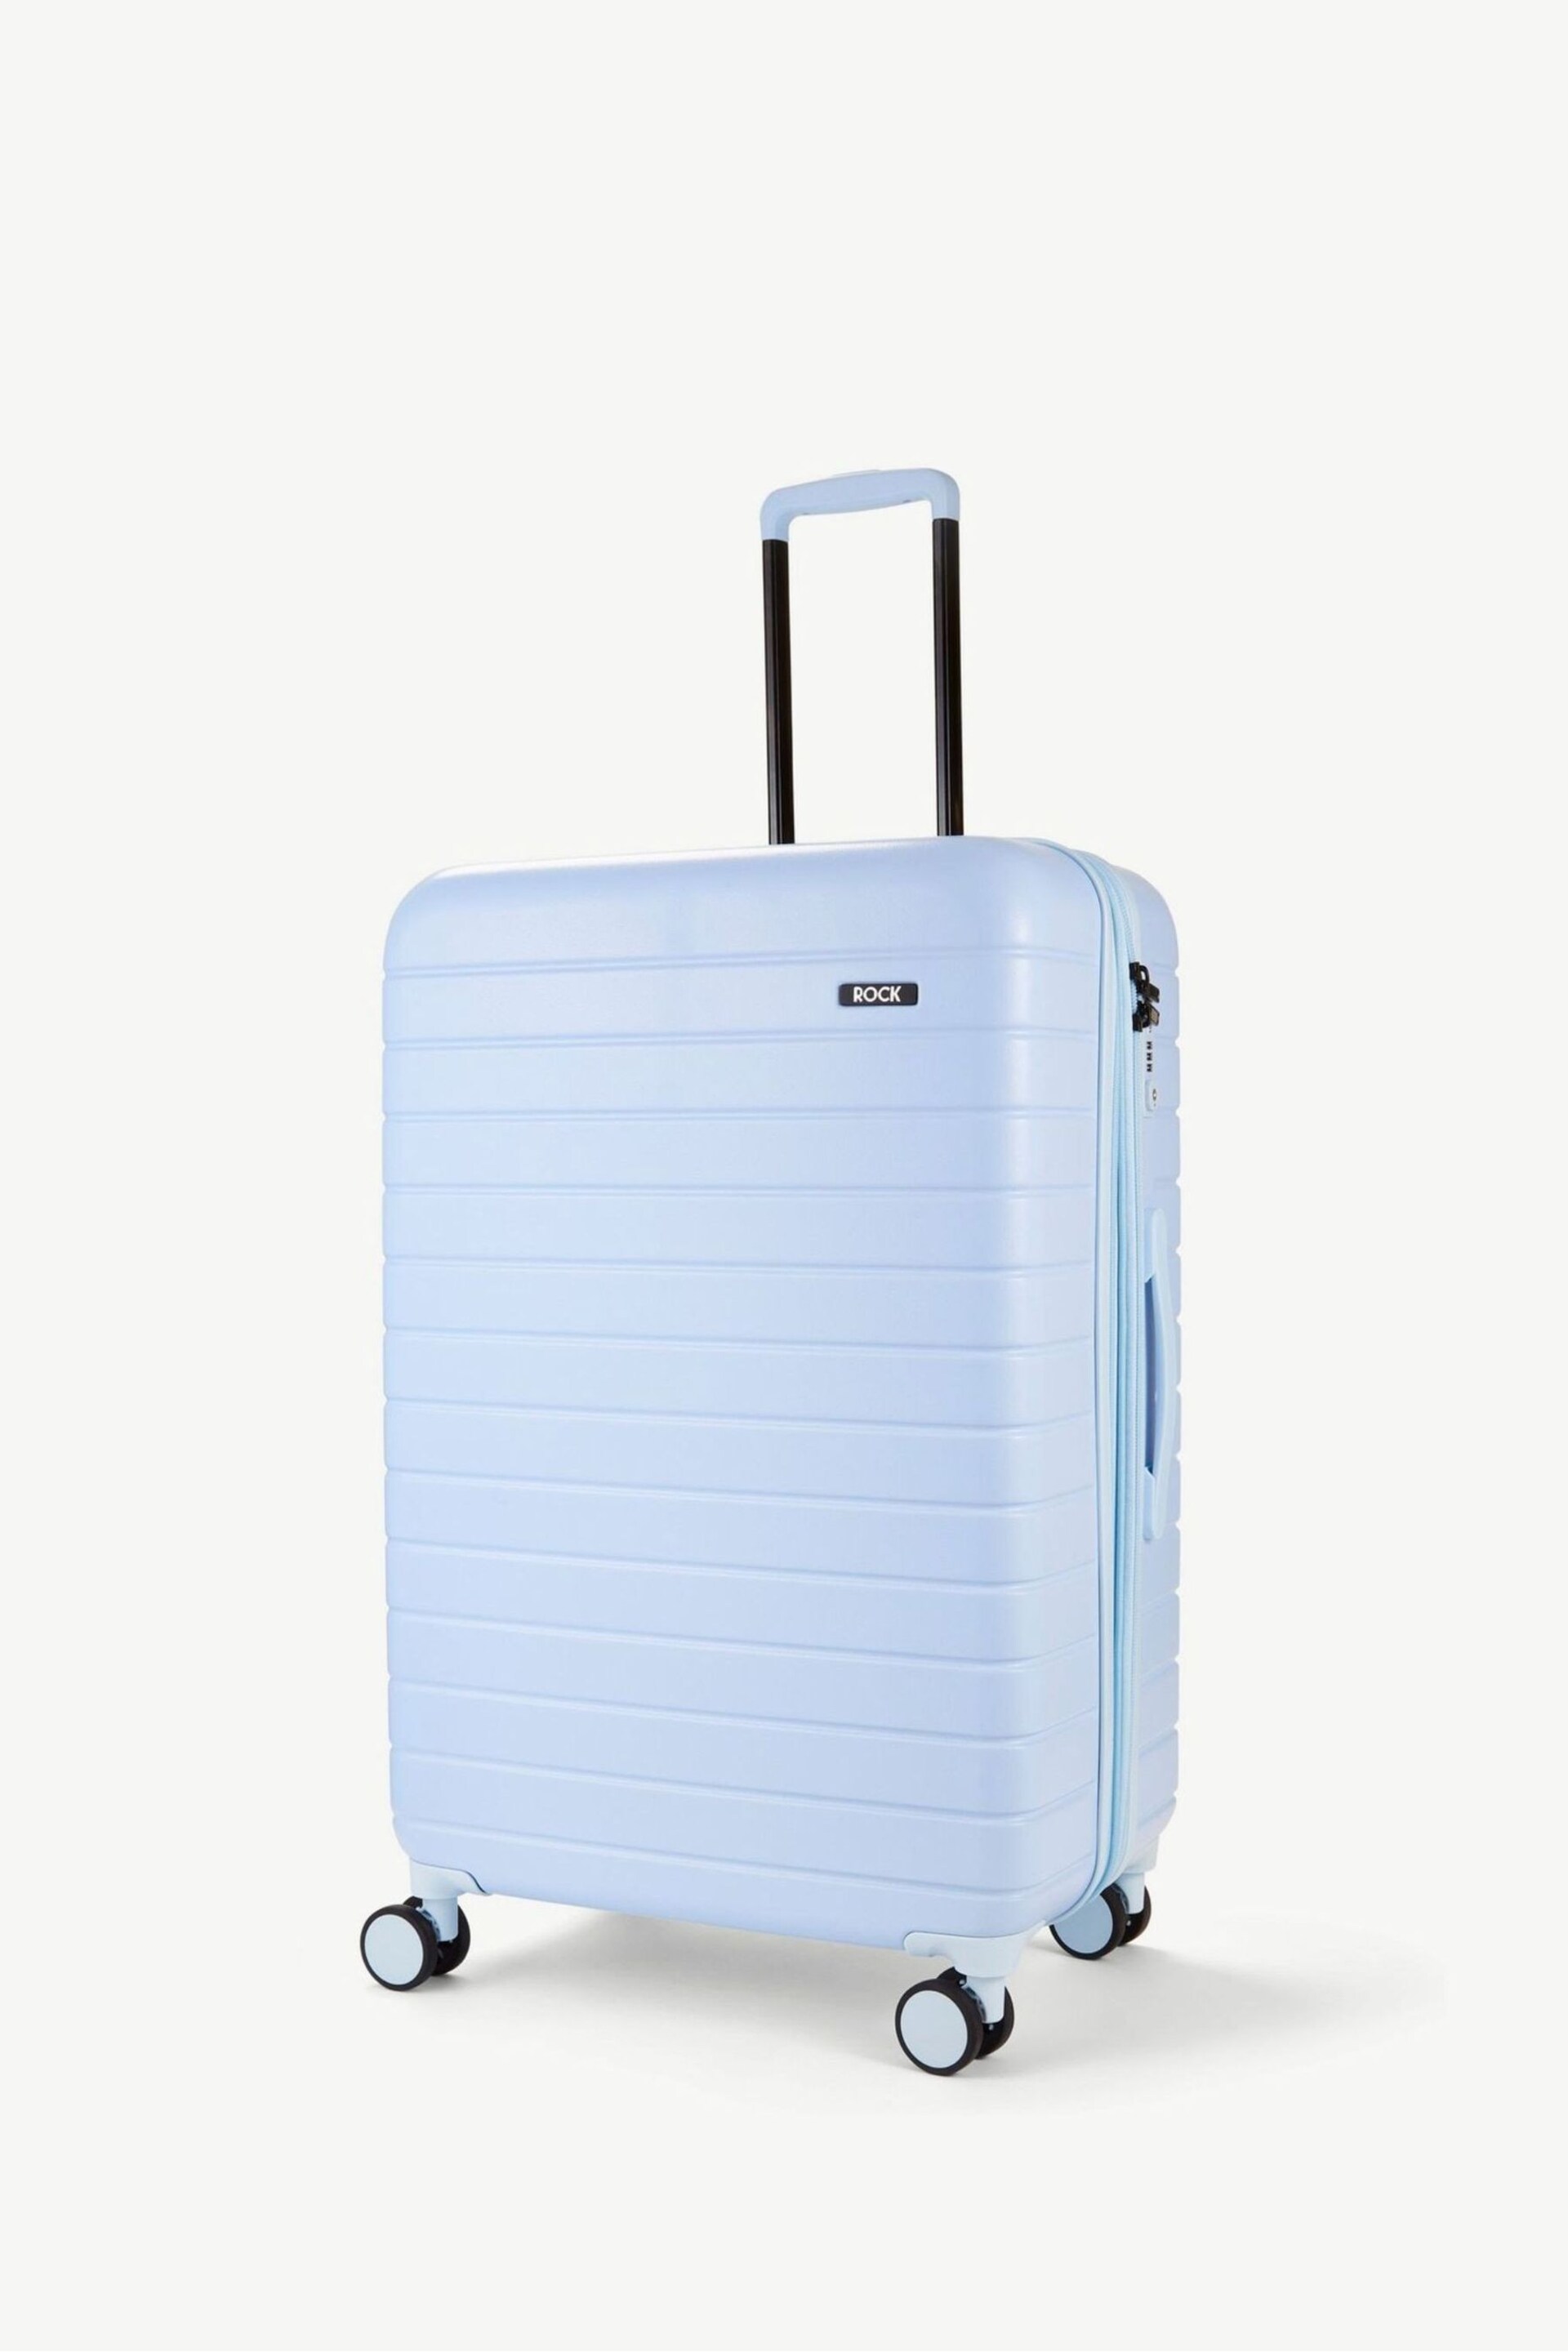 Rock Luggage Novo Large Suitcase - Image 1 of 1